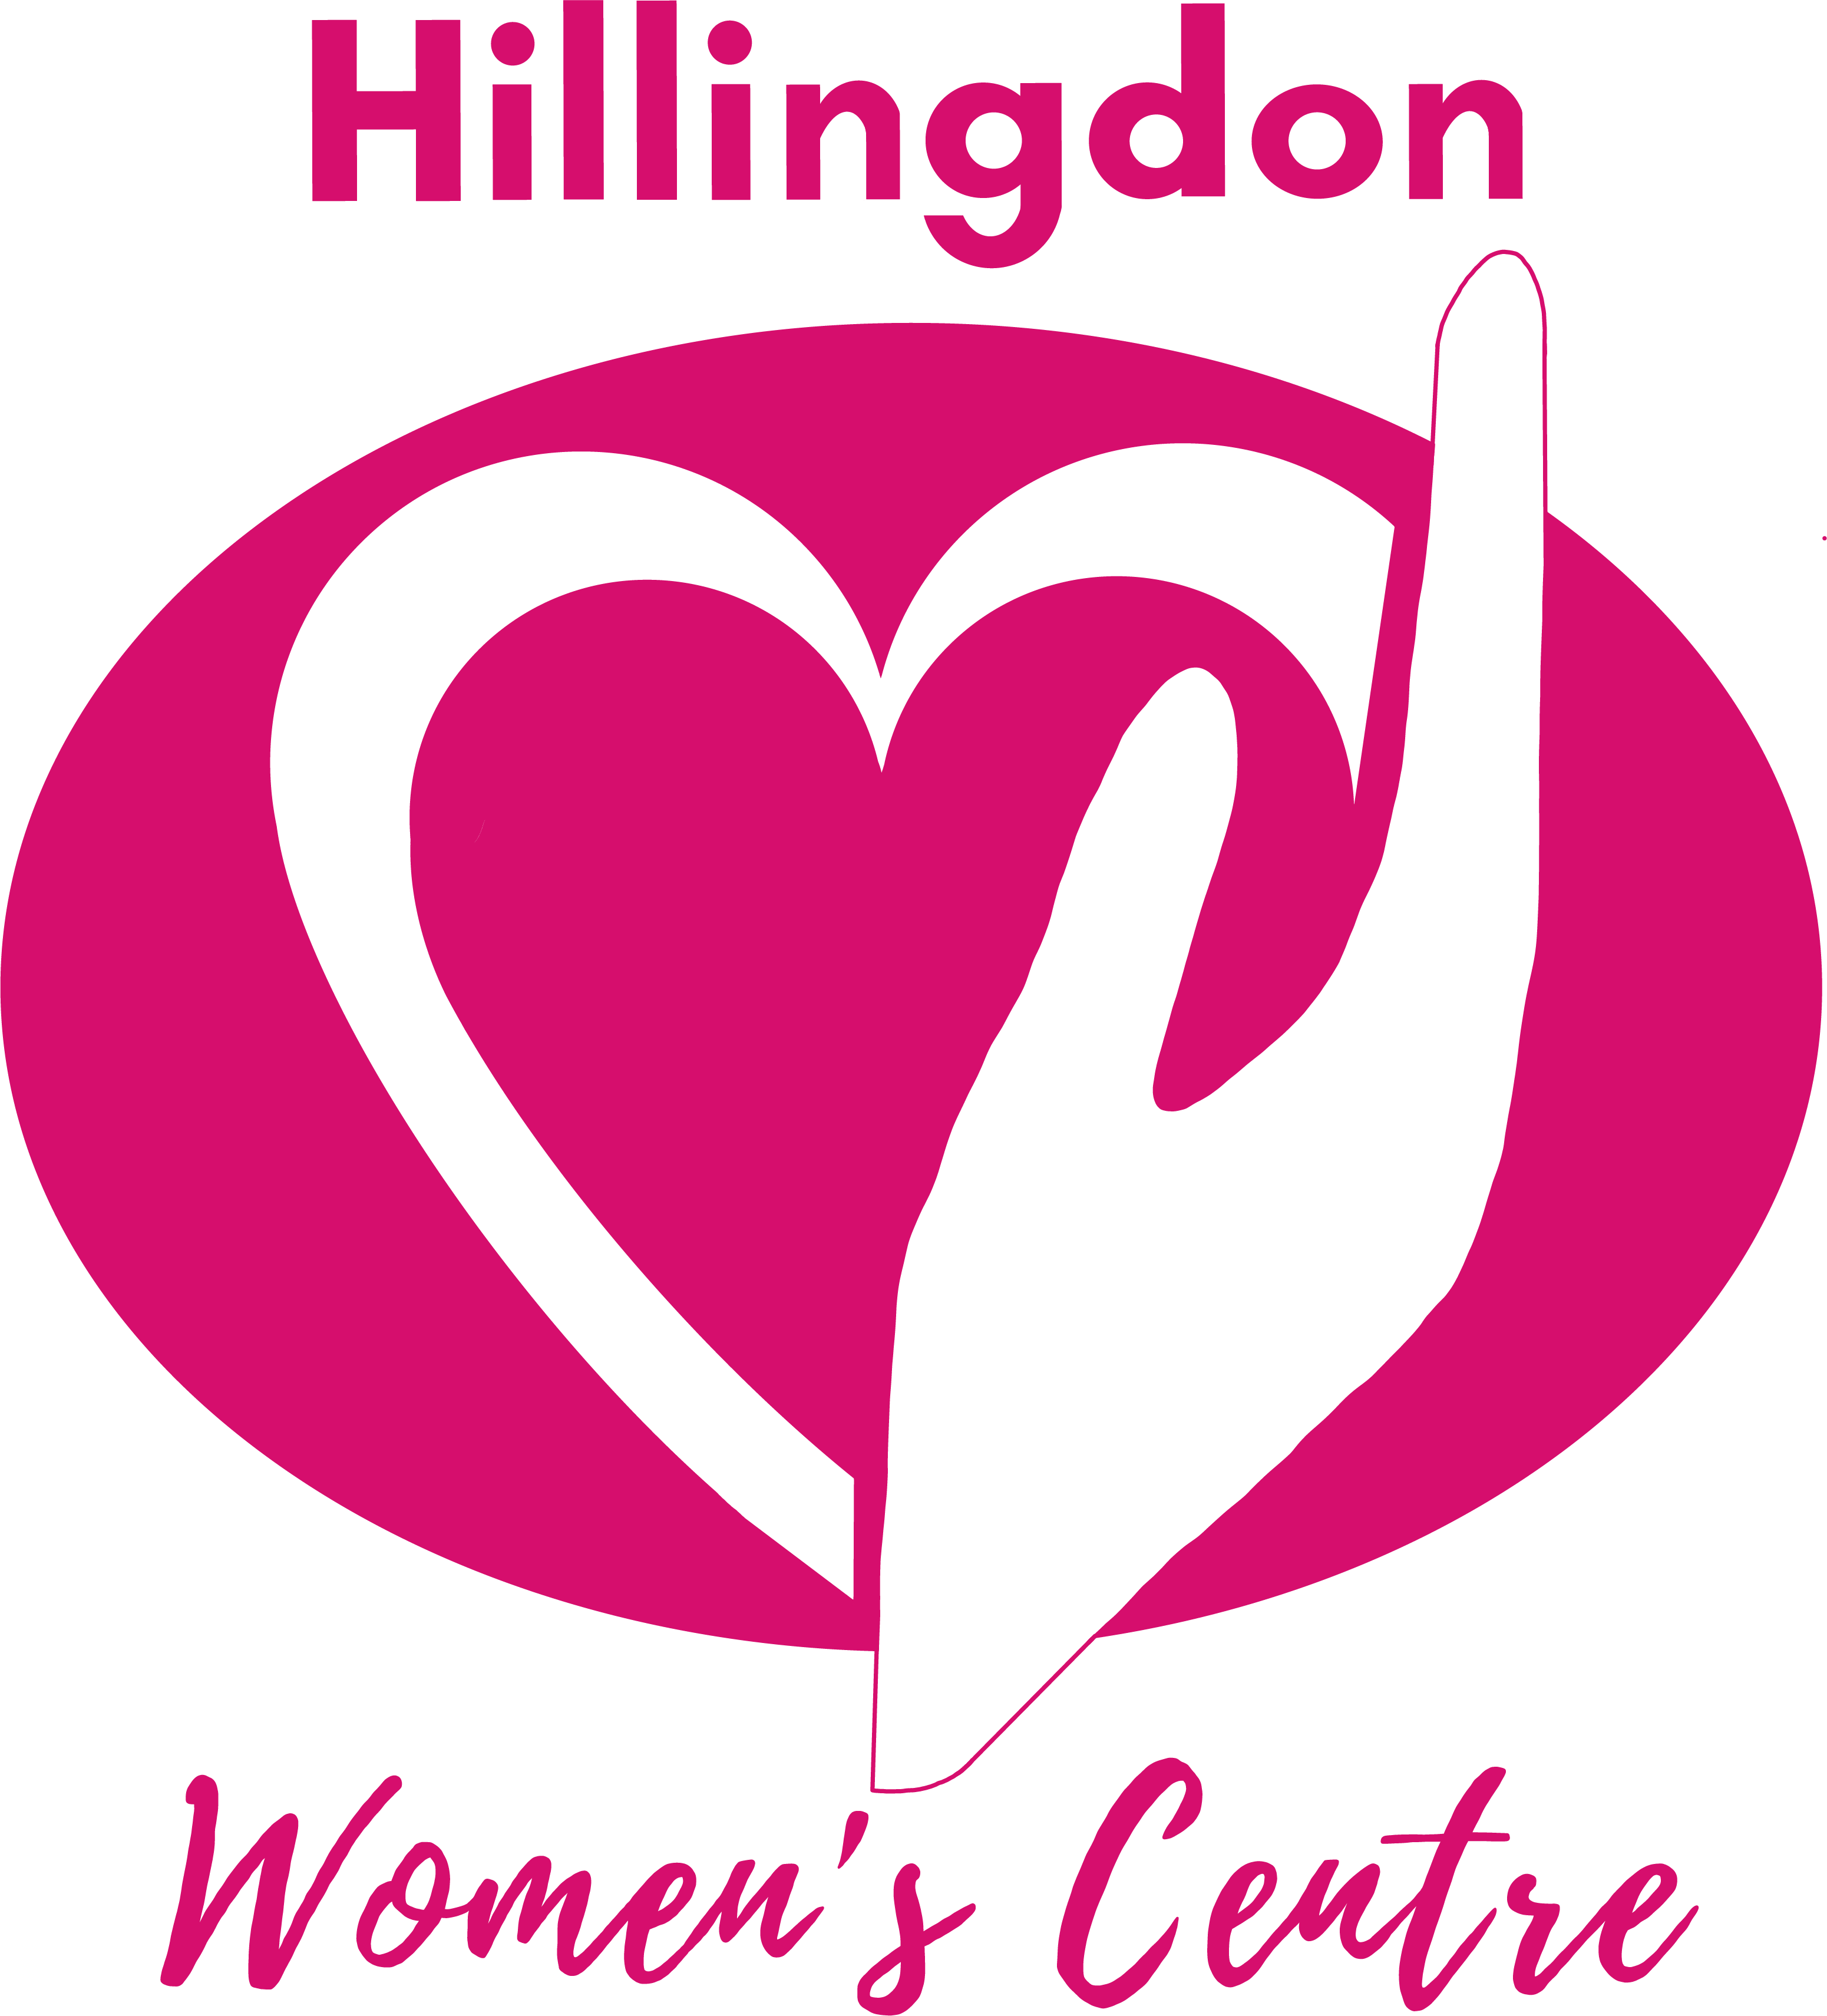 Hillingdon Women's Centre